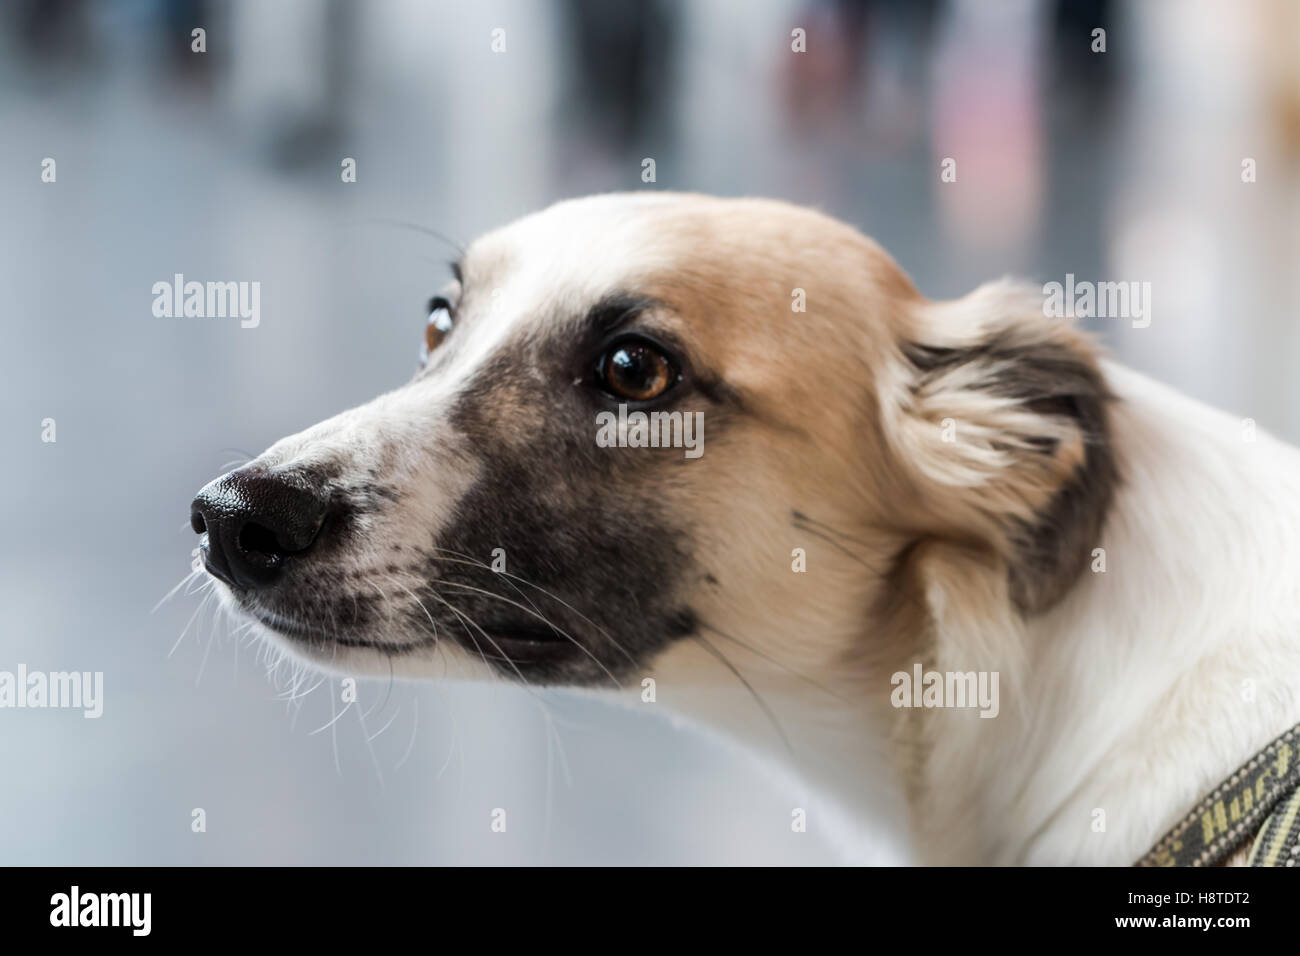 Closeup of a greyhound Stock Photo